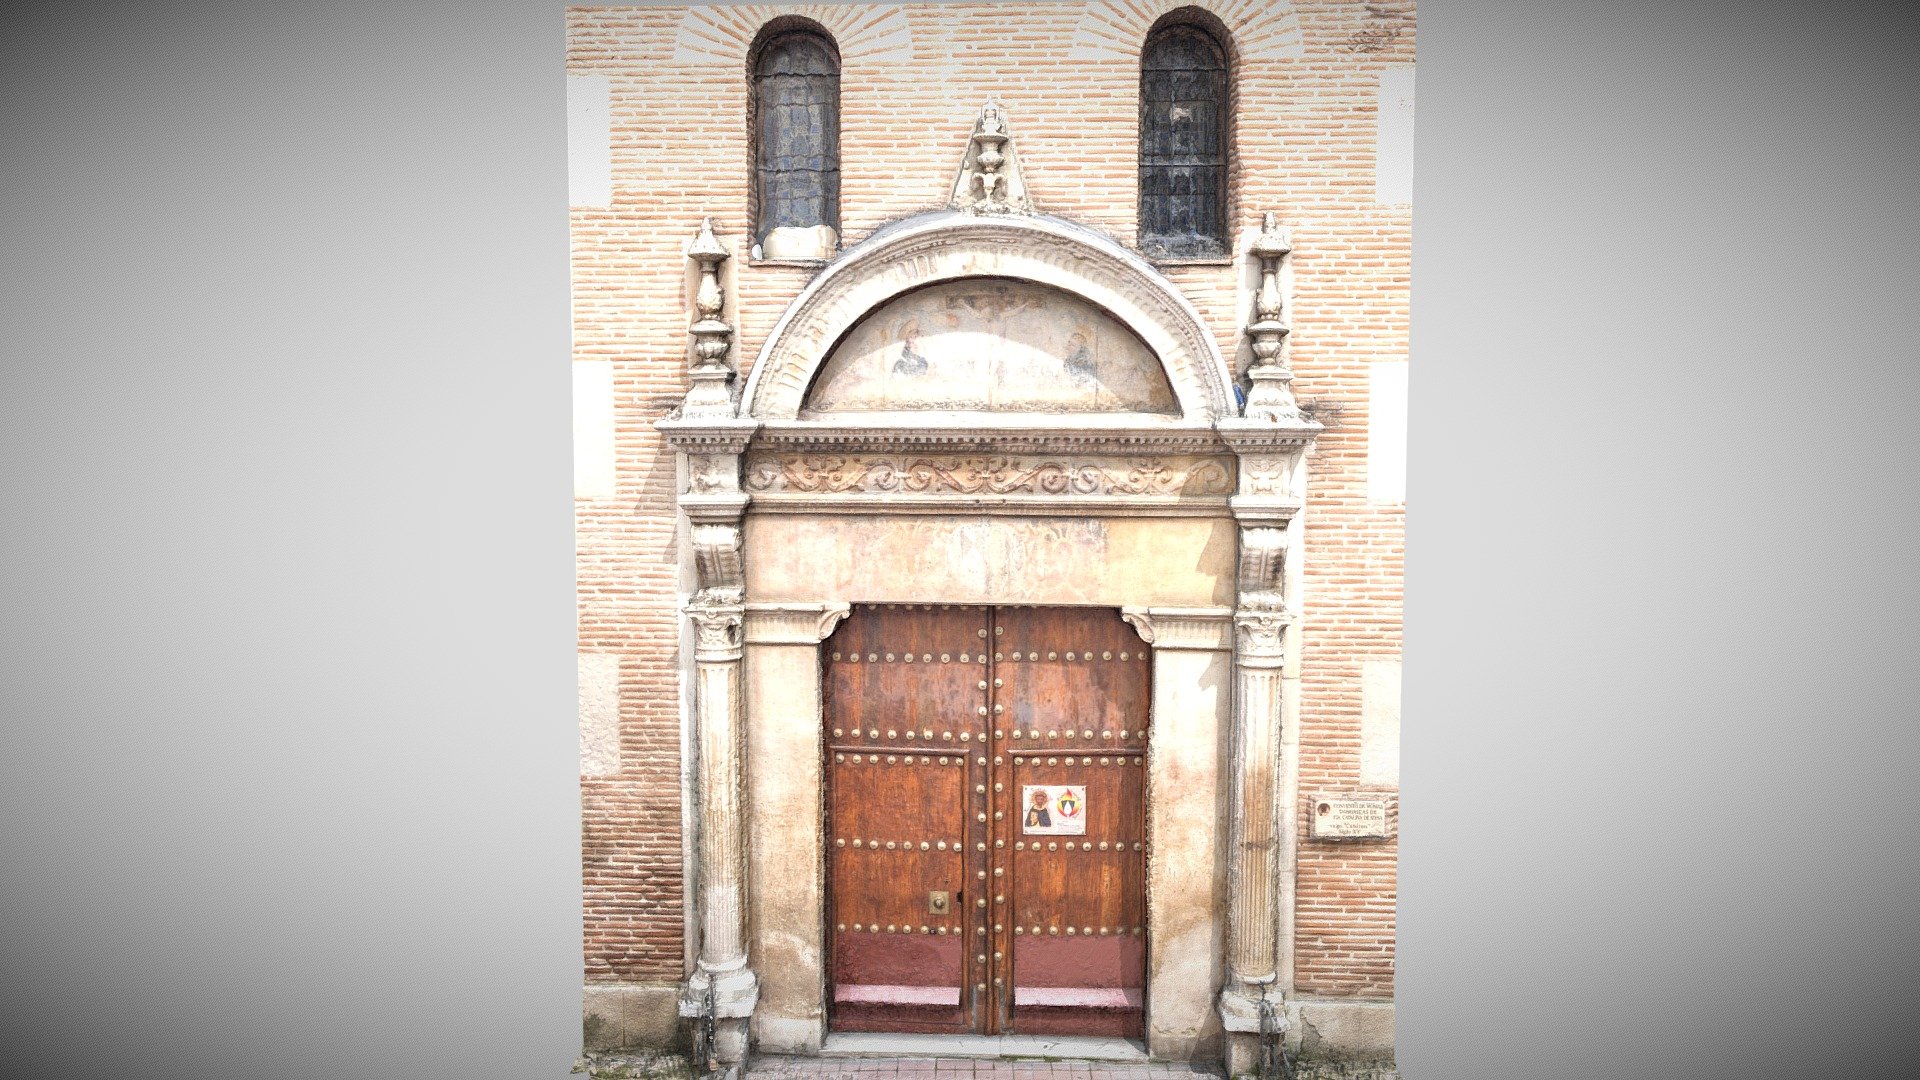 De portada plateresca es la fachada del Convento de Dominicas de Santa Catalina de Siena. La misma pertenece a finales del siglo XVI cuando Roma anunció su fundación oficial, ya que el edificio había sido adquirido y fundado &ldquo;extraoficialmente